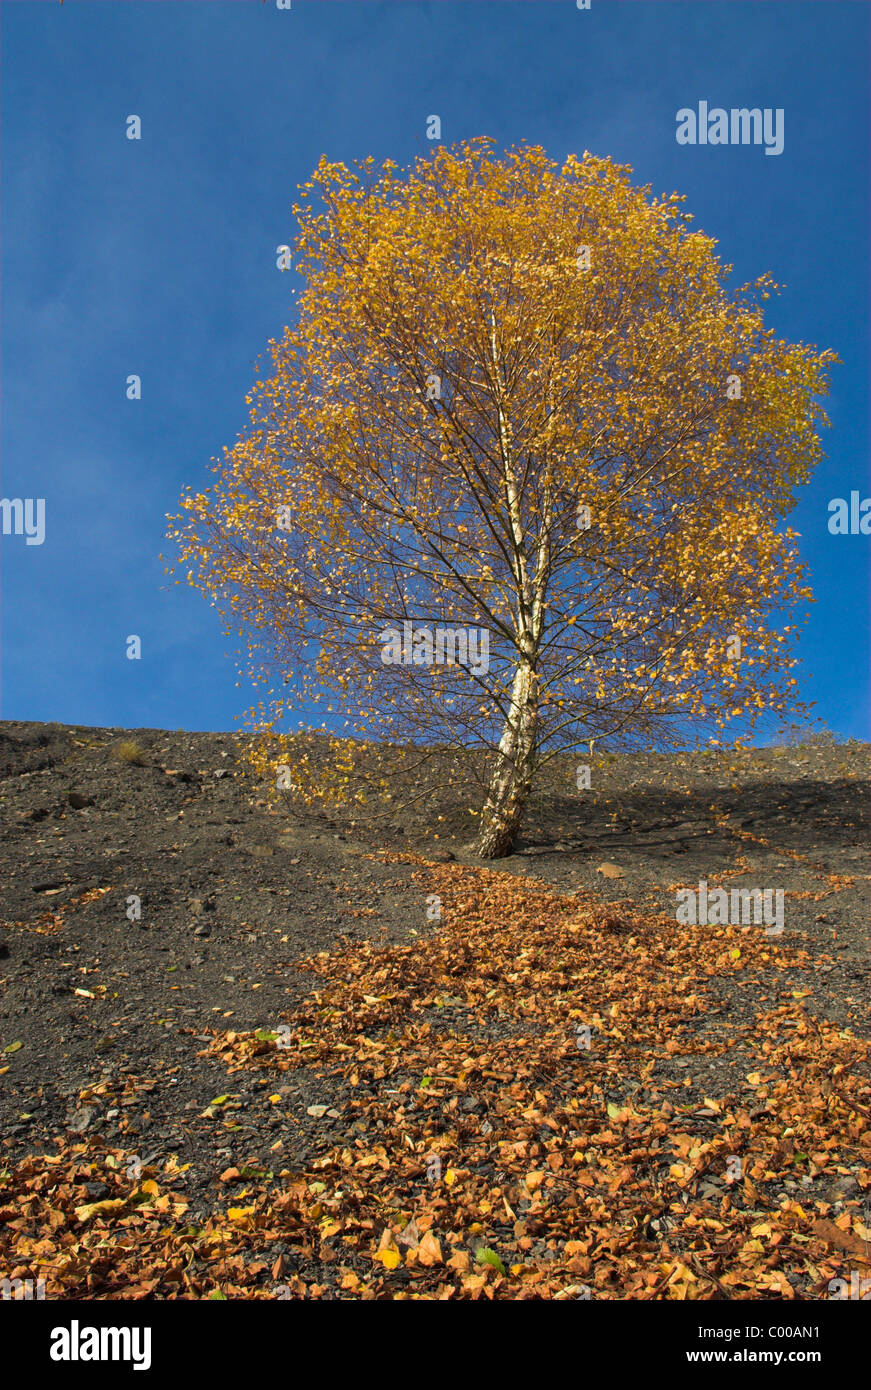 Haenge-Birke, Herbstfaerbung auf der Kohlehalde, Betula pendula, Weeping Birch, autumn colour Stock Photo